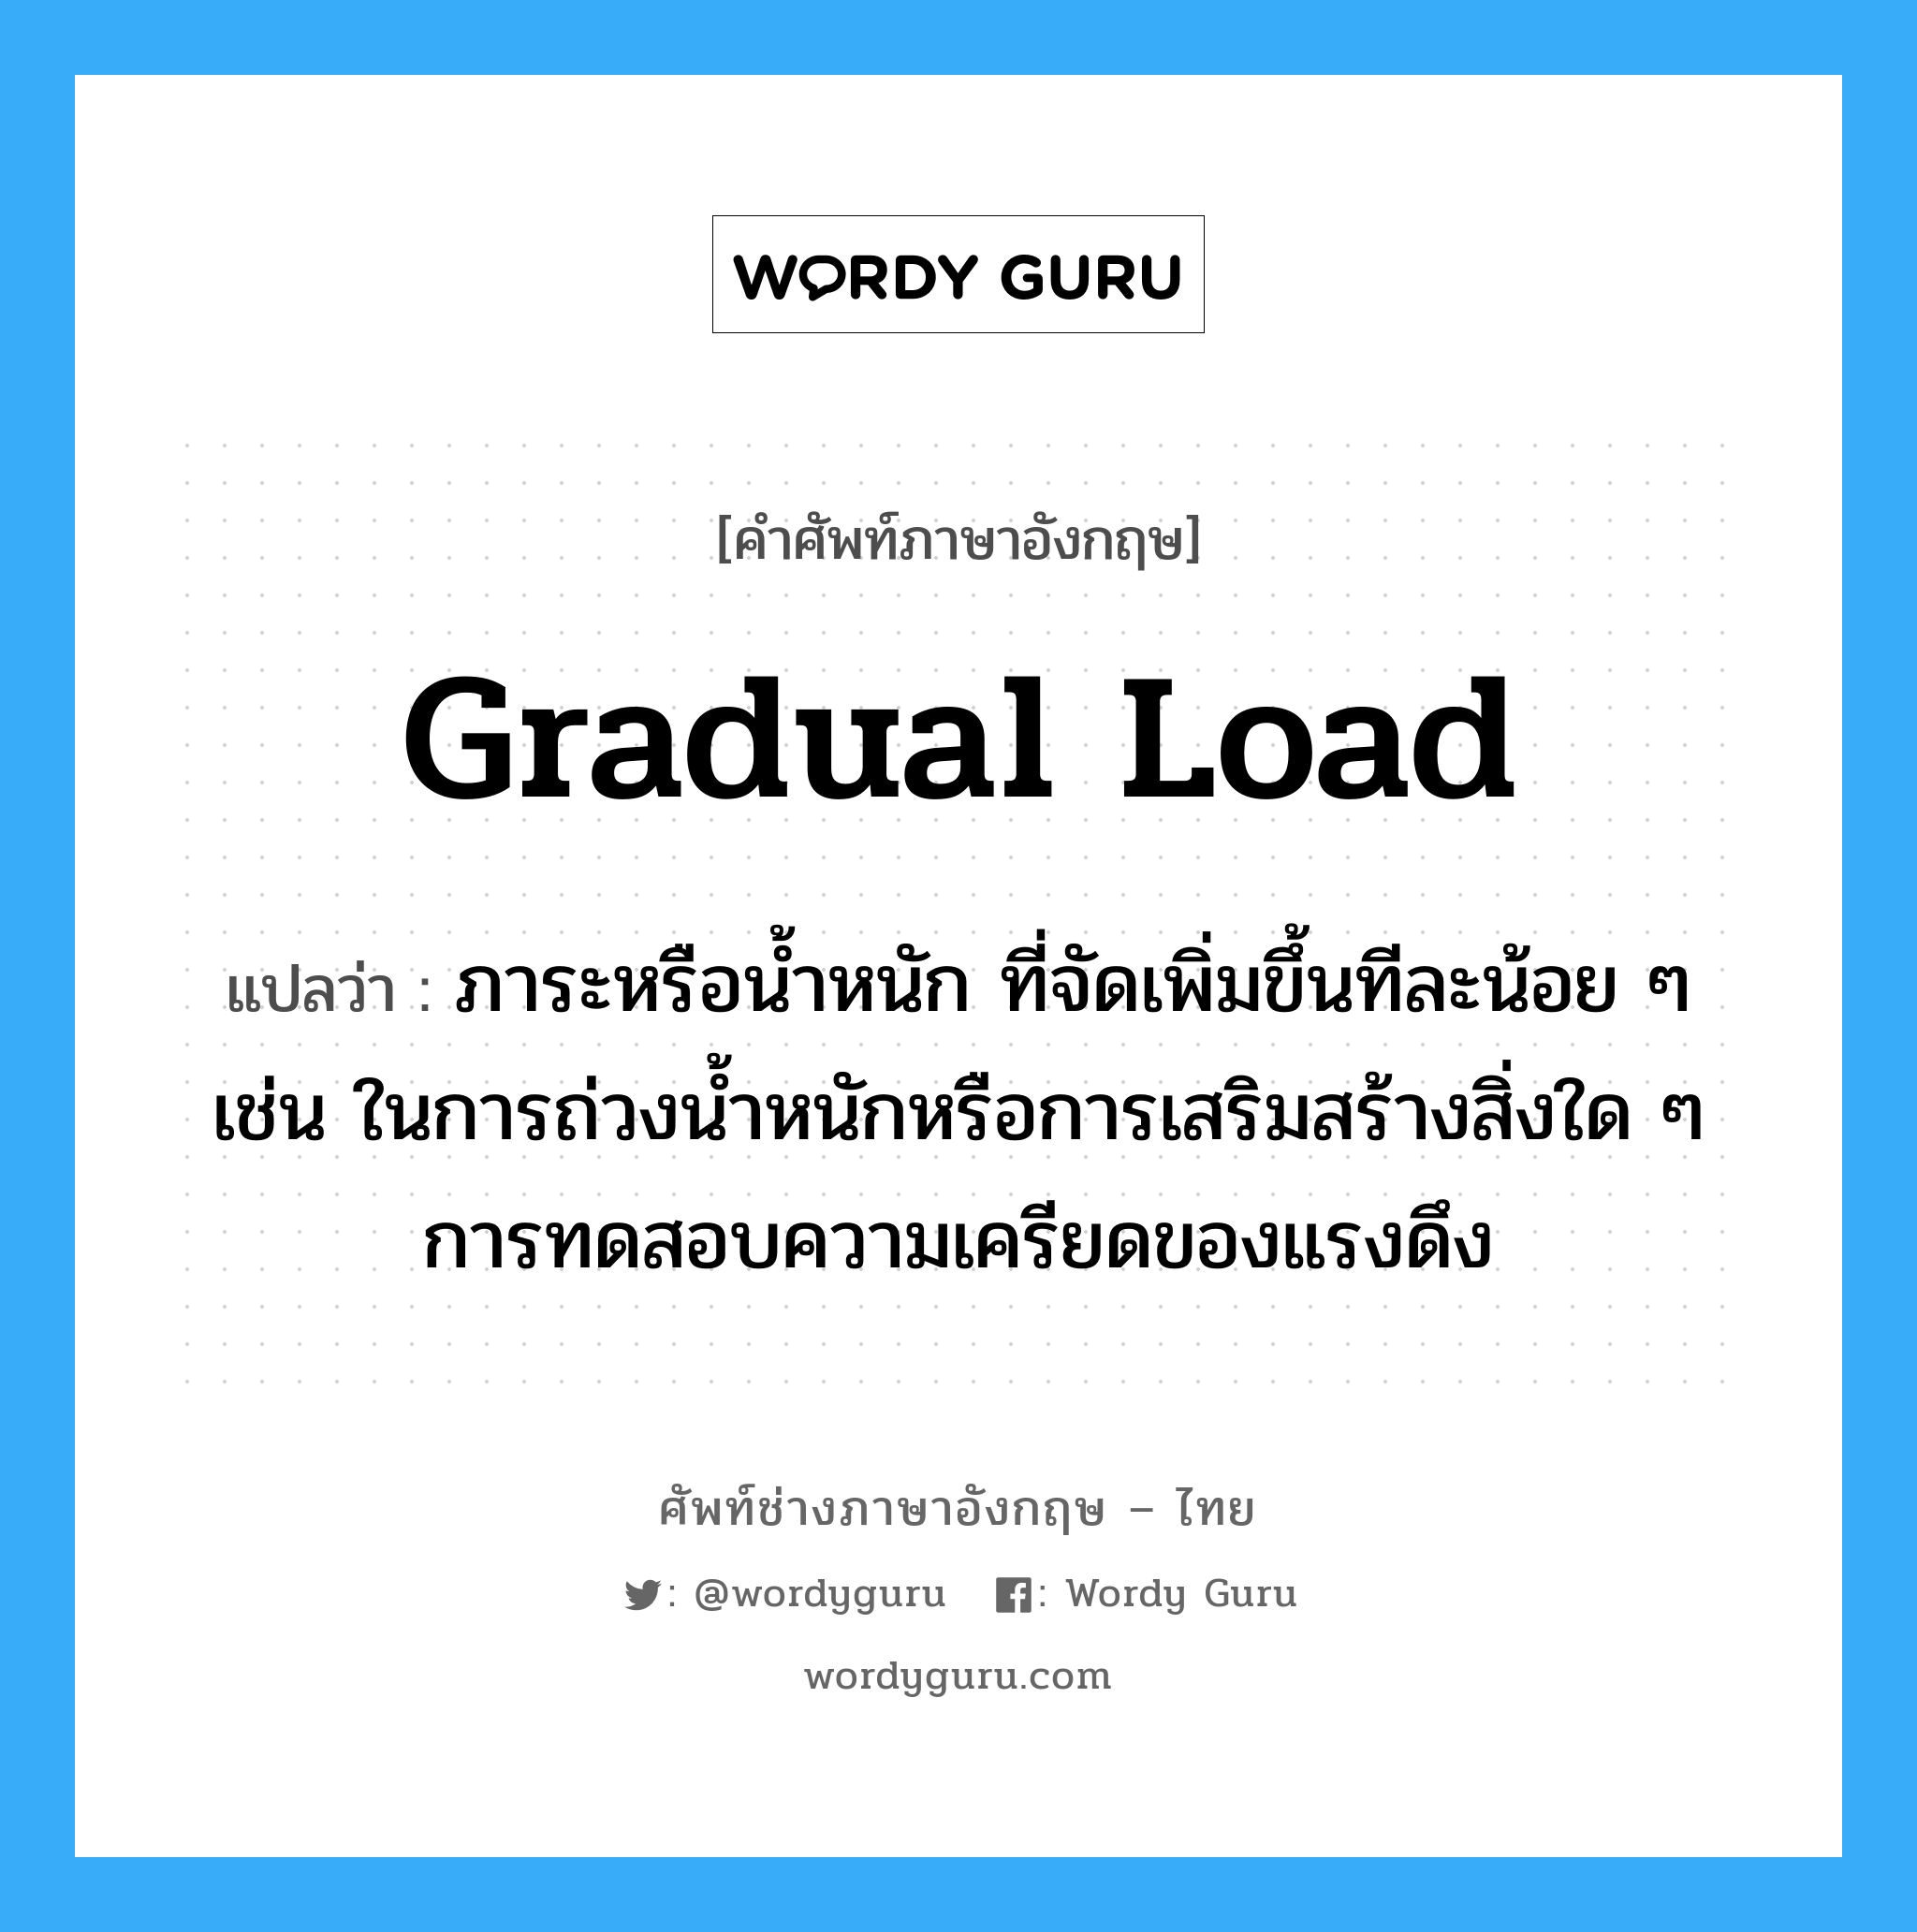 gradual load แปลว่า?, คำศัพท์ช่างภาษาอังกฤษ - ไทย gradual load คำศัพท์ภาษาอังกฤษ gradual load แปลว่า ภาระหรือน้ำหนัก ที่จัดเพิ่มขึ้นทีละน้อย ๆ เช่น ในการถ่วงน้ำหนักหรือการเสริมสร้างสิ่งใด ๆ การทดสอบความเครียดของแรงดึง